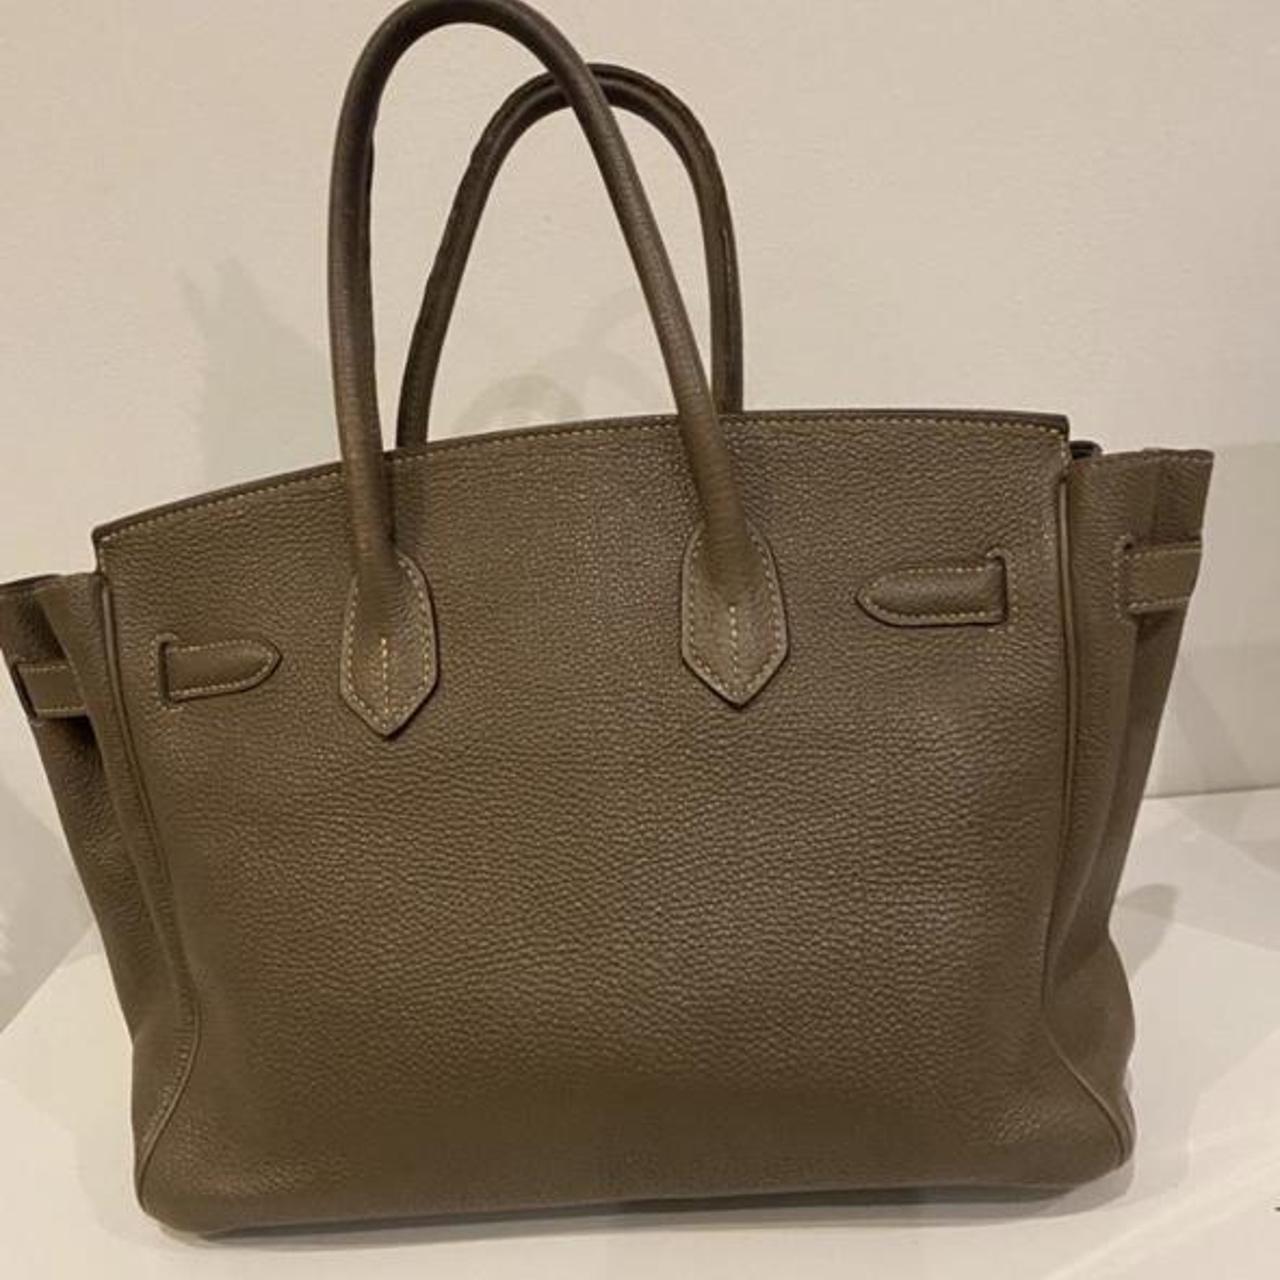 A Brand new Hermes Birkin bag - Depop